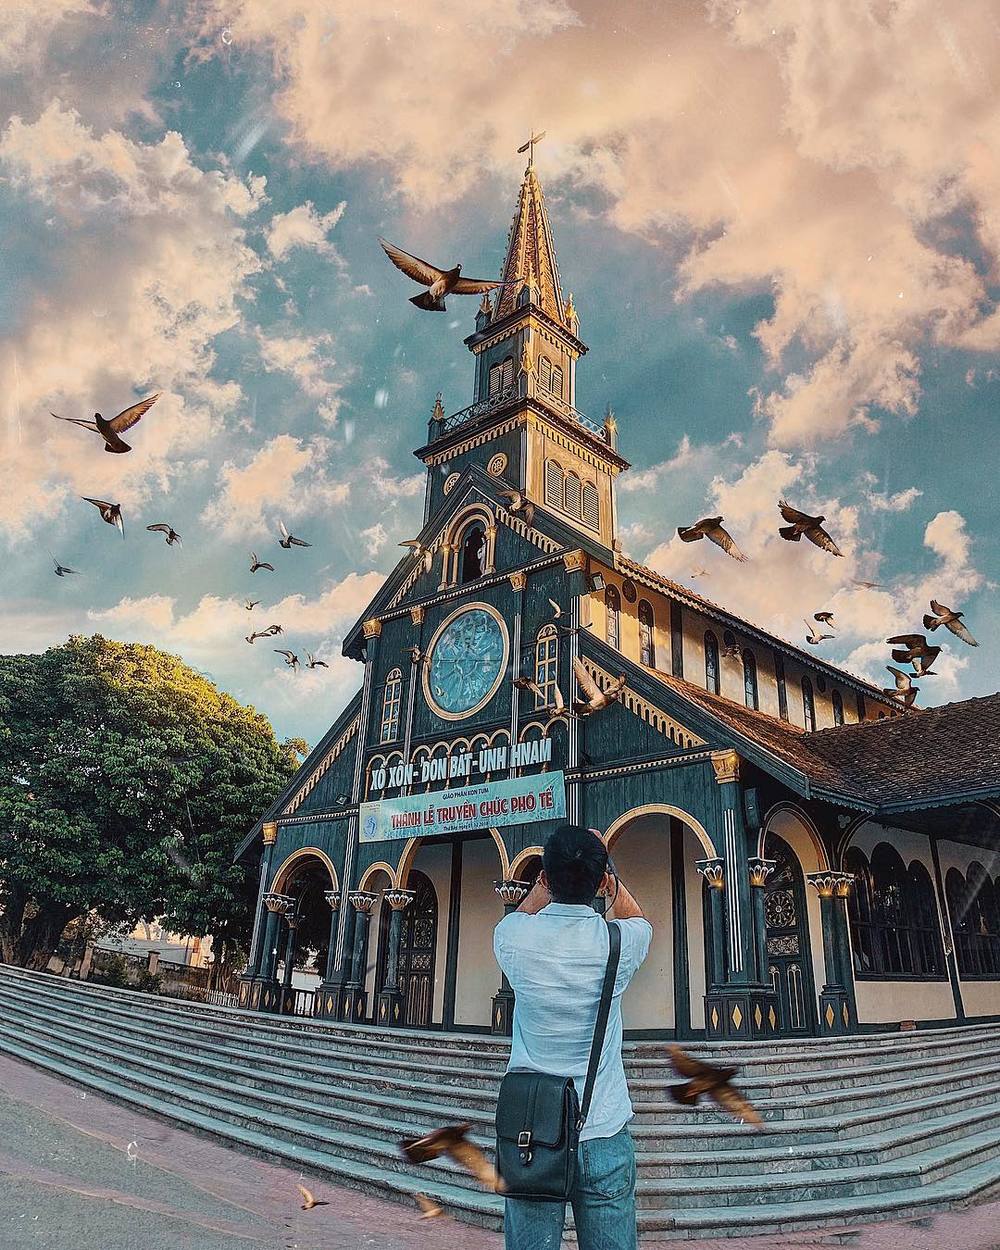  
Nhà thờ gỗ ở Kon Tum - địa điểm check-in hàng đầu của giới trẻ. (Ảnh: @cuongkhii)